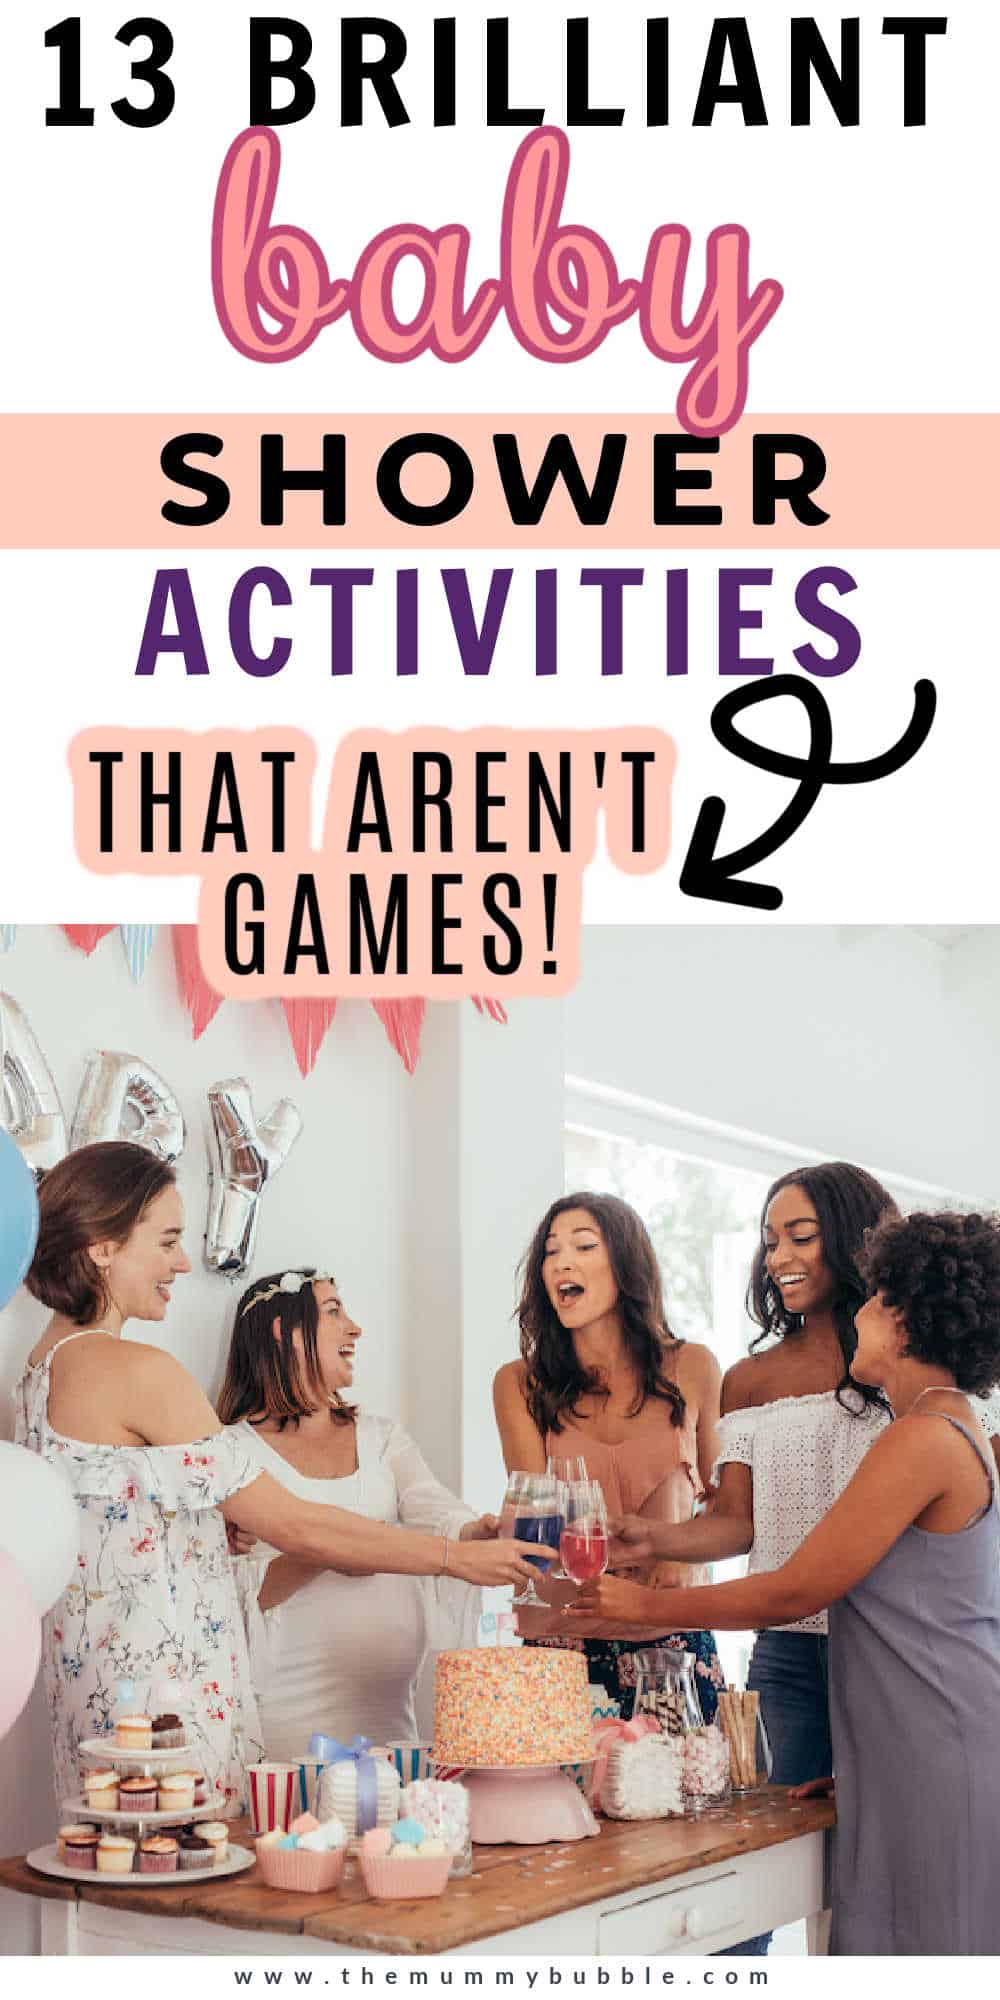 Baby shower activities that aren't games 